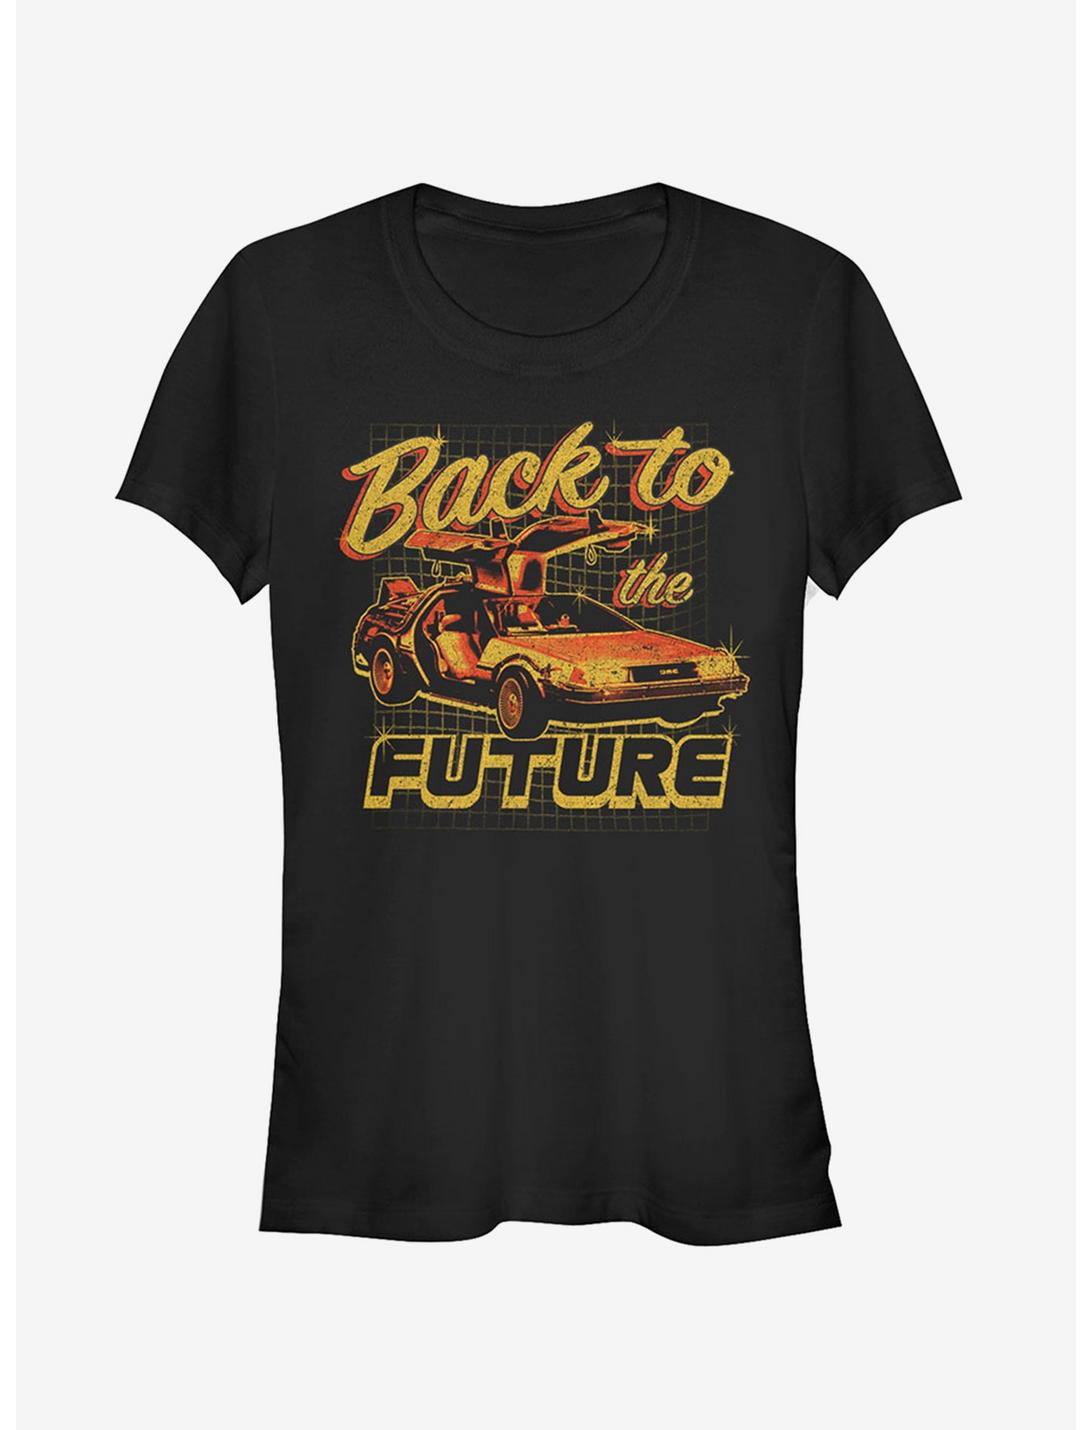 DeLorean Schematic Print Girls T-Shirt, BLACK, hi-res